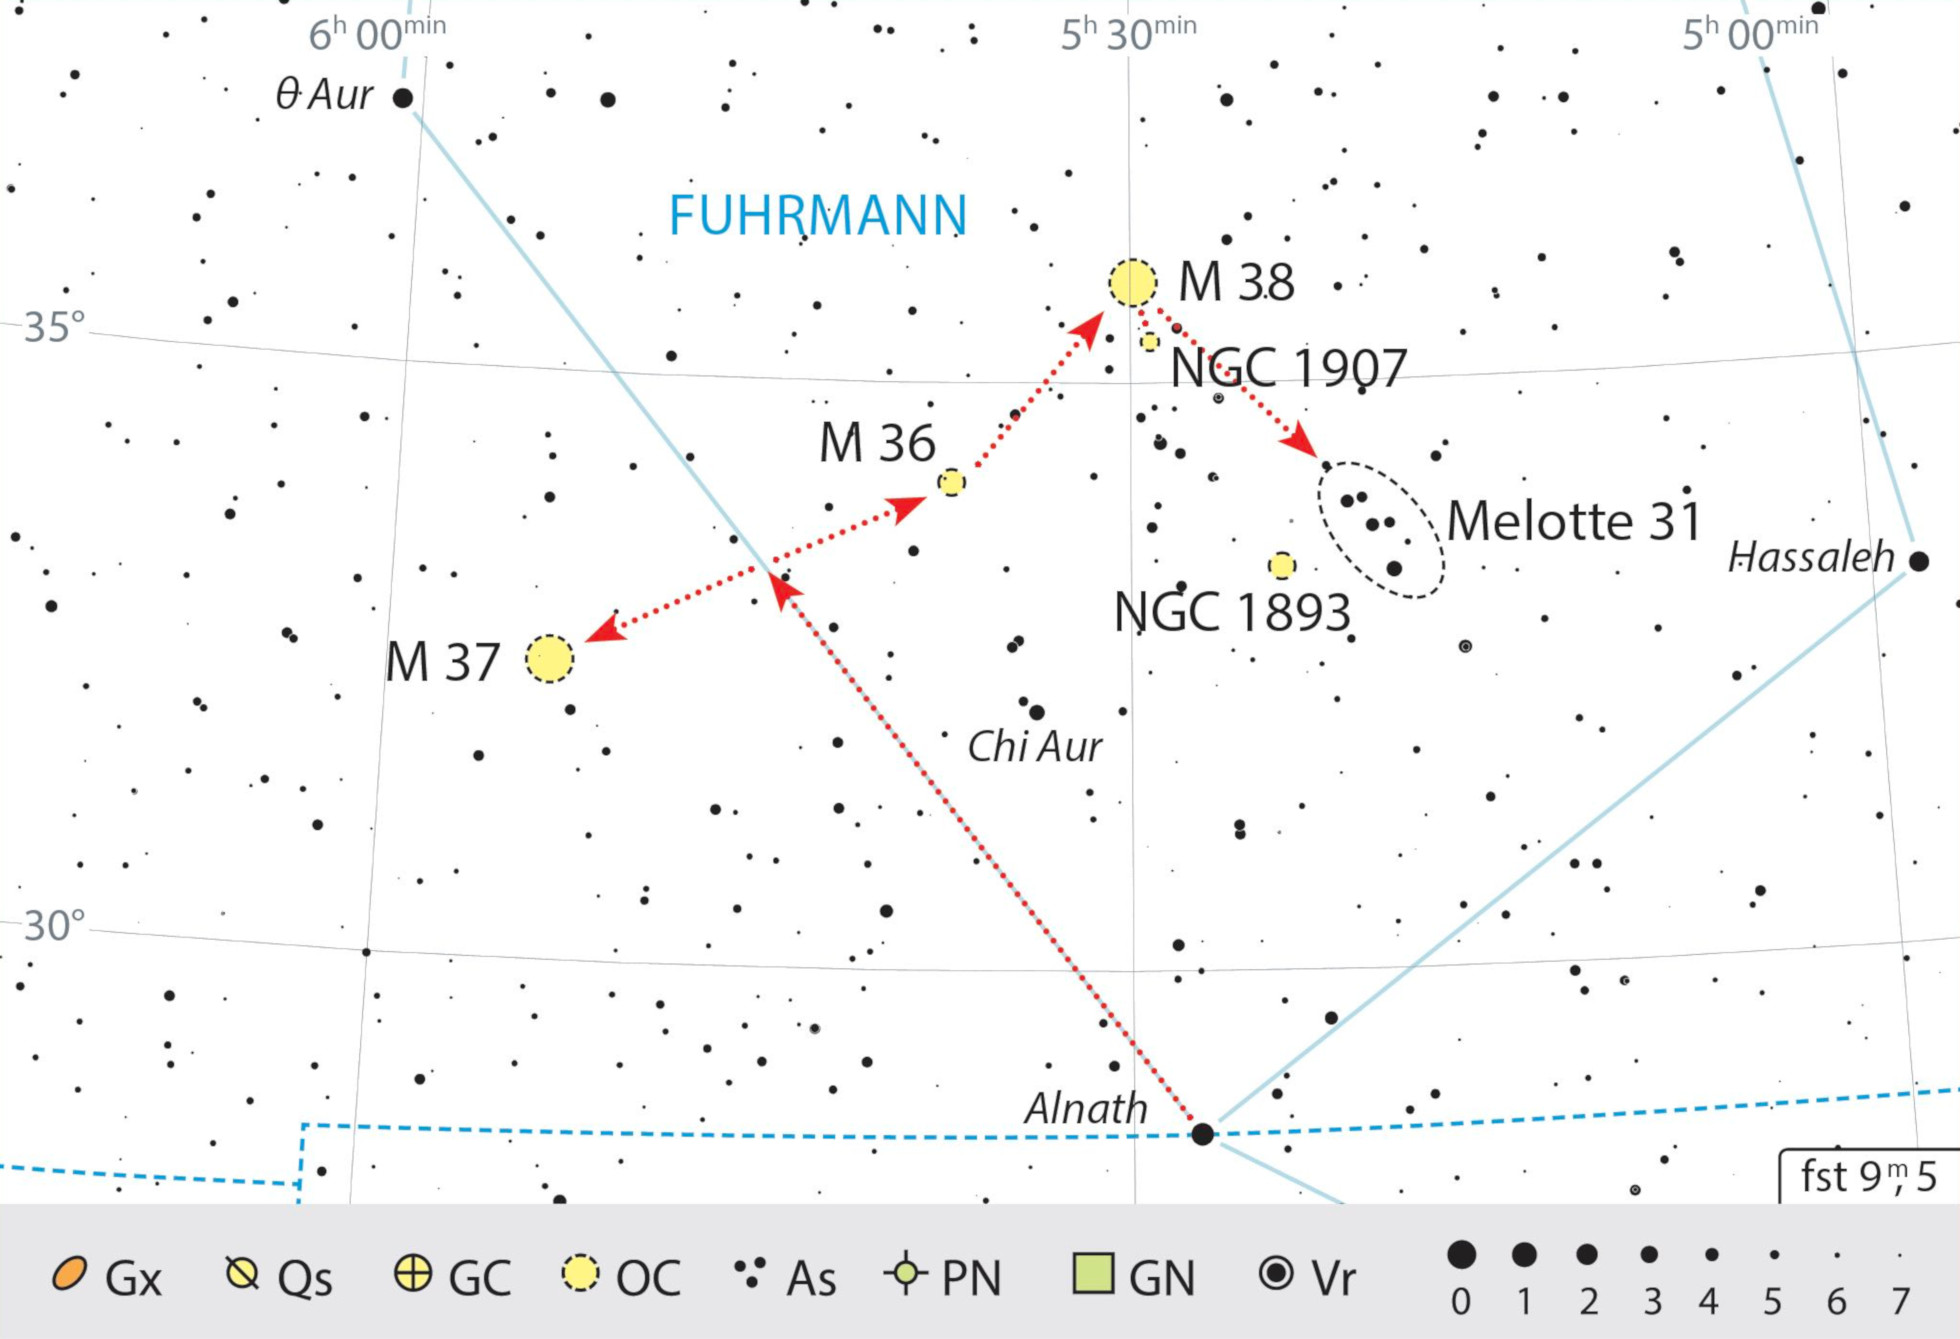 În sudul constelației Vizitiul, se găsesc mai multe roiuri stelare interesante învecinate, care pot fi explorate și cu binoclul. J. Scholten